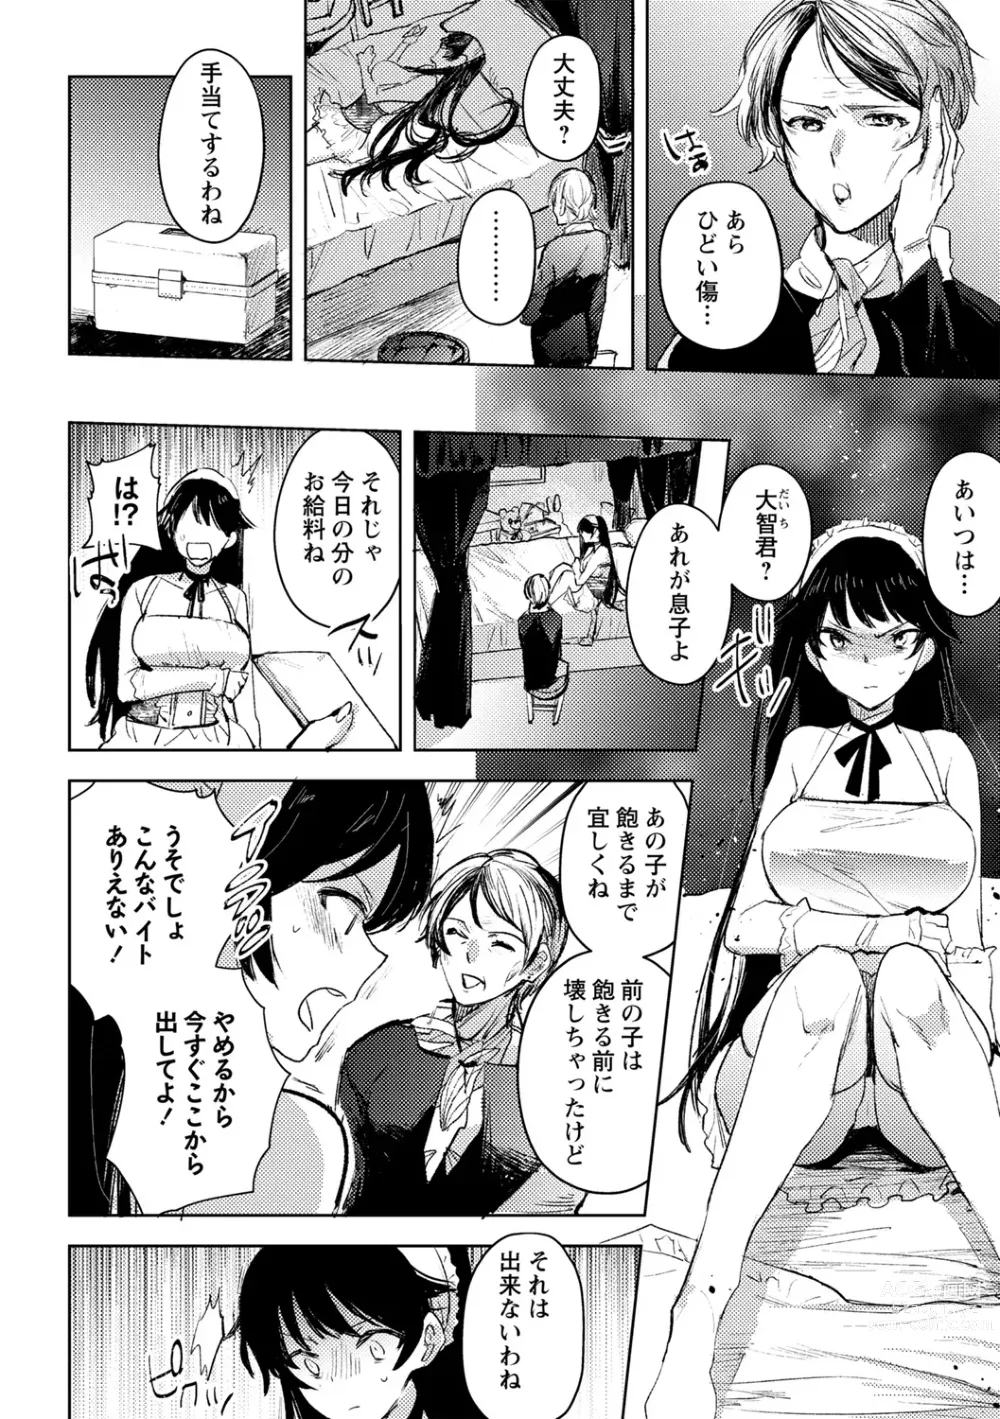 Page 8 of manga Yuuhei  KodoOji no Tou